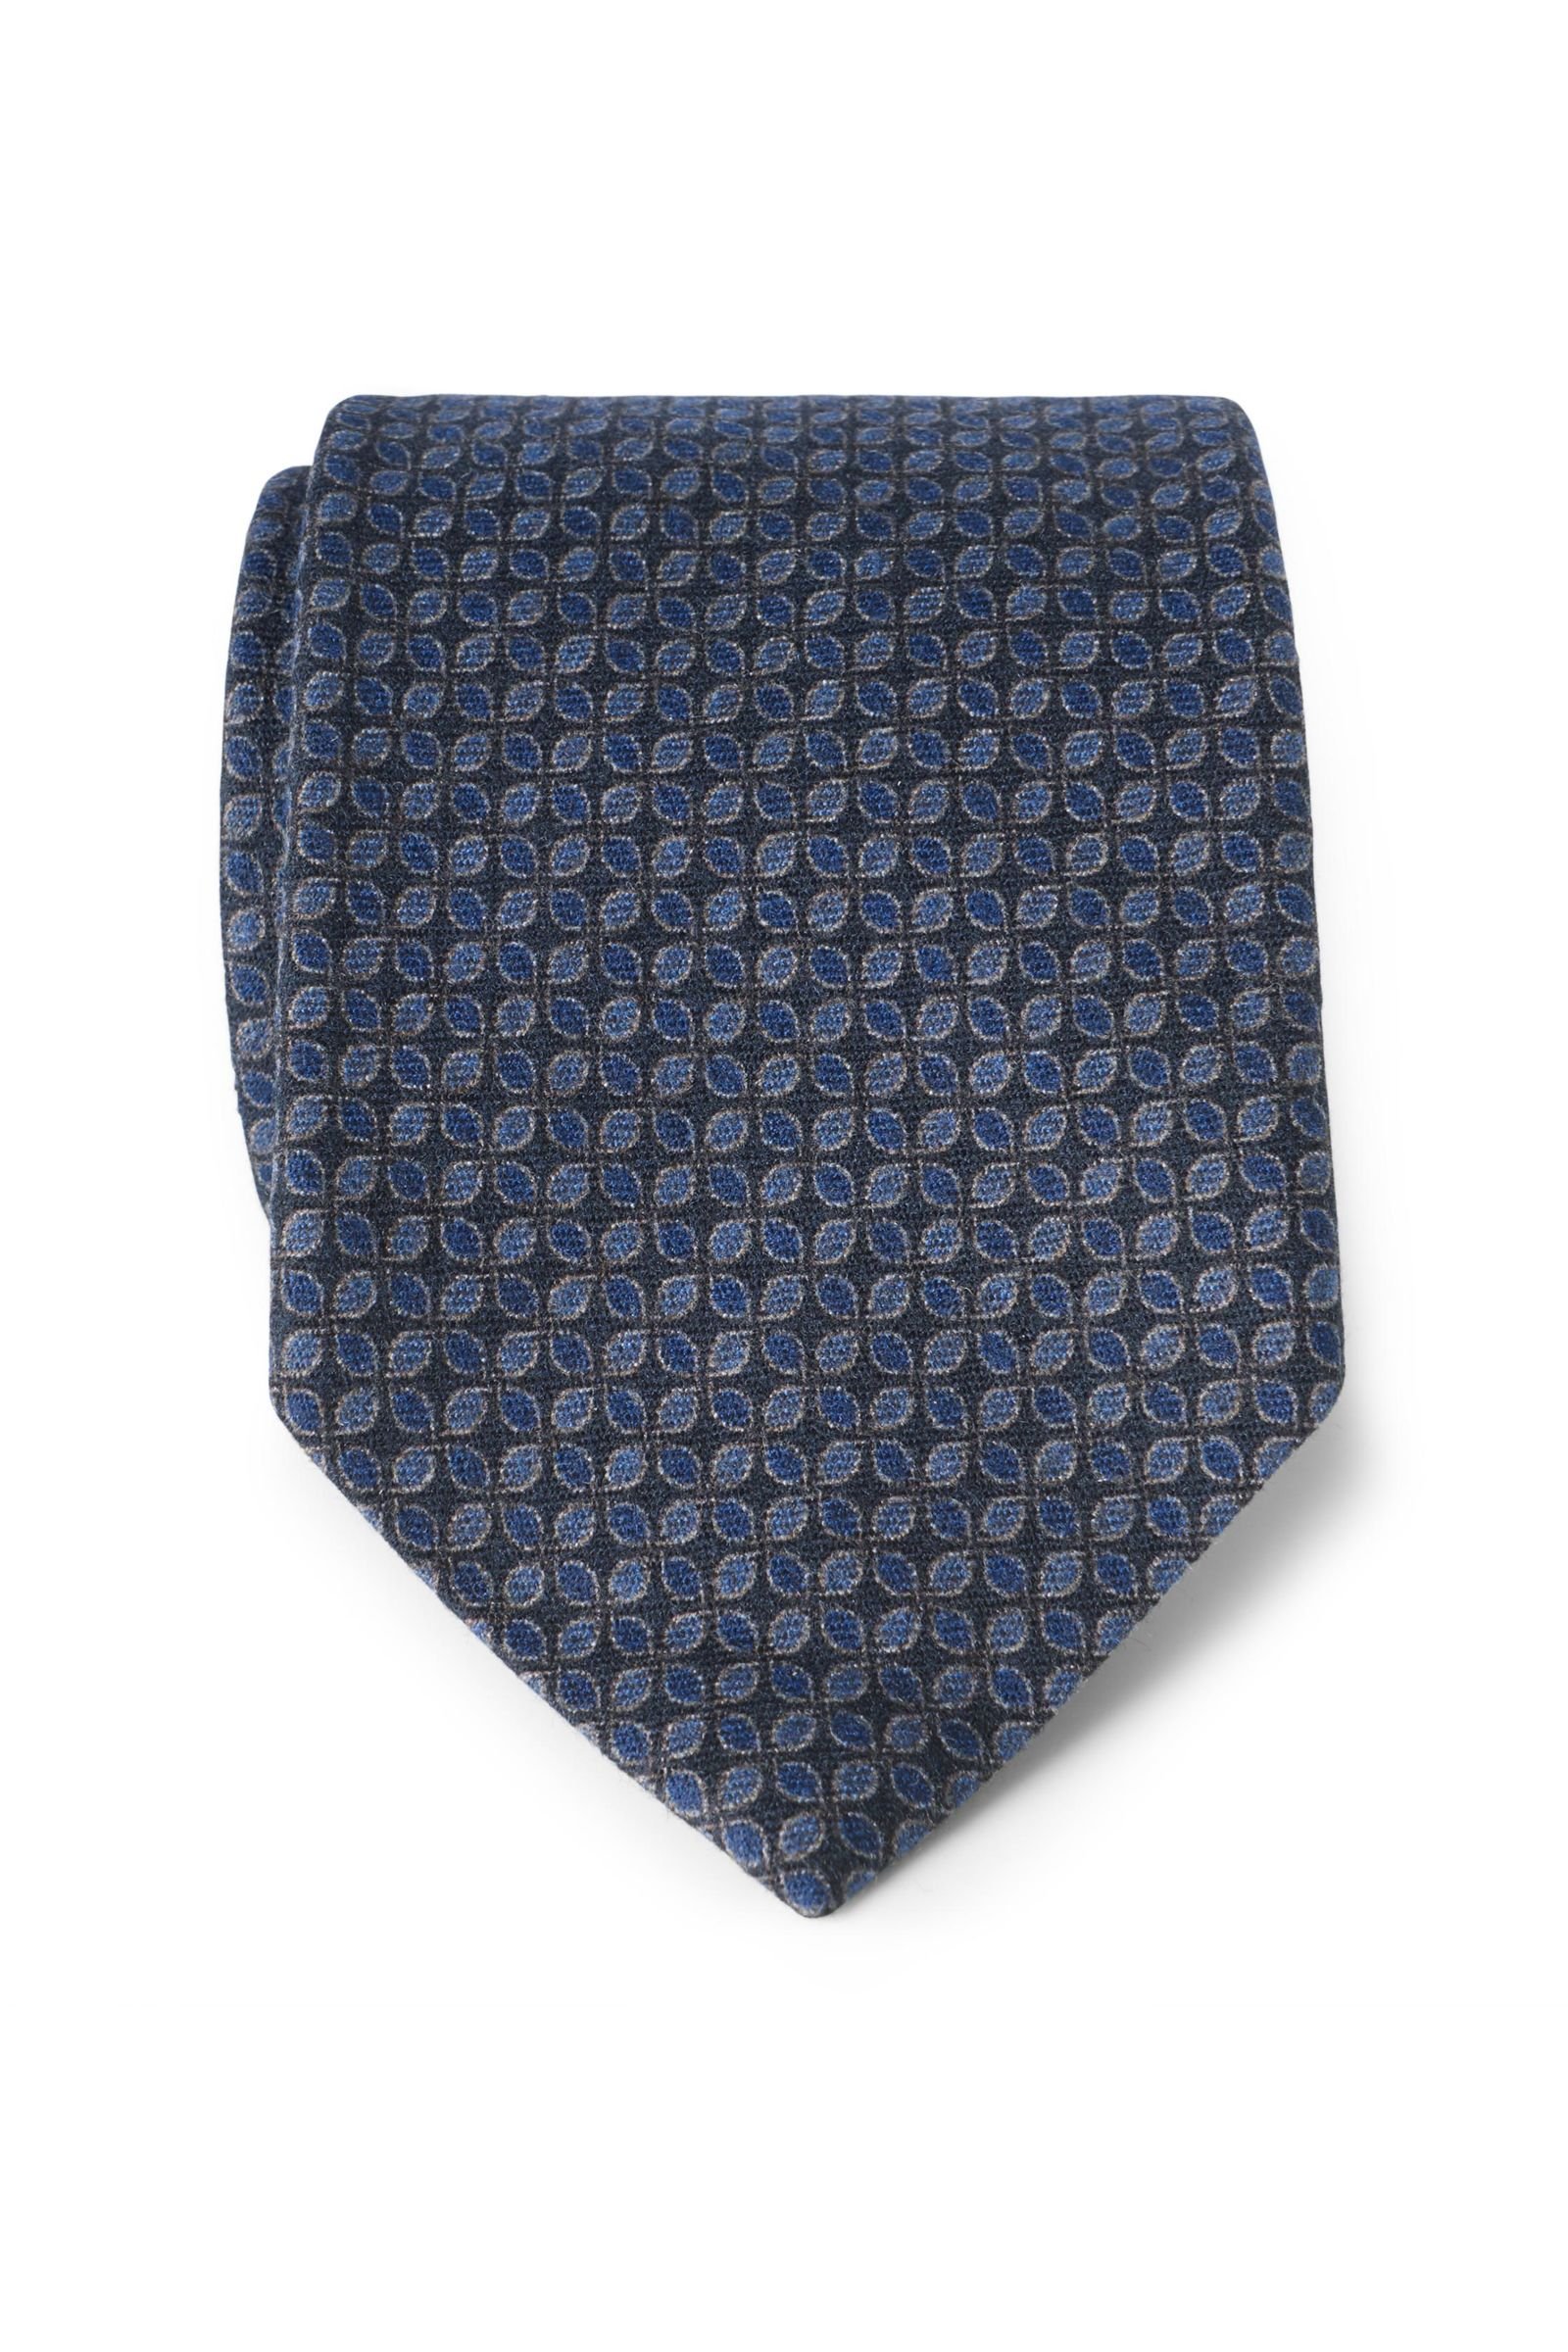 Wool tie navy patterned